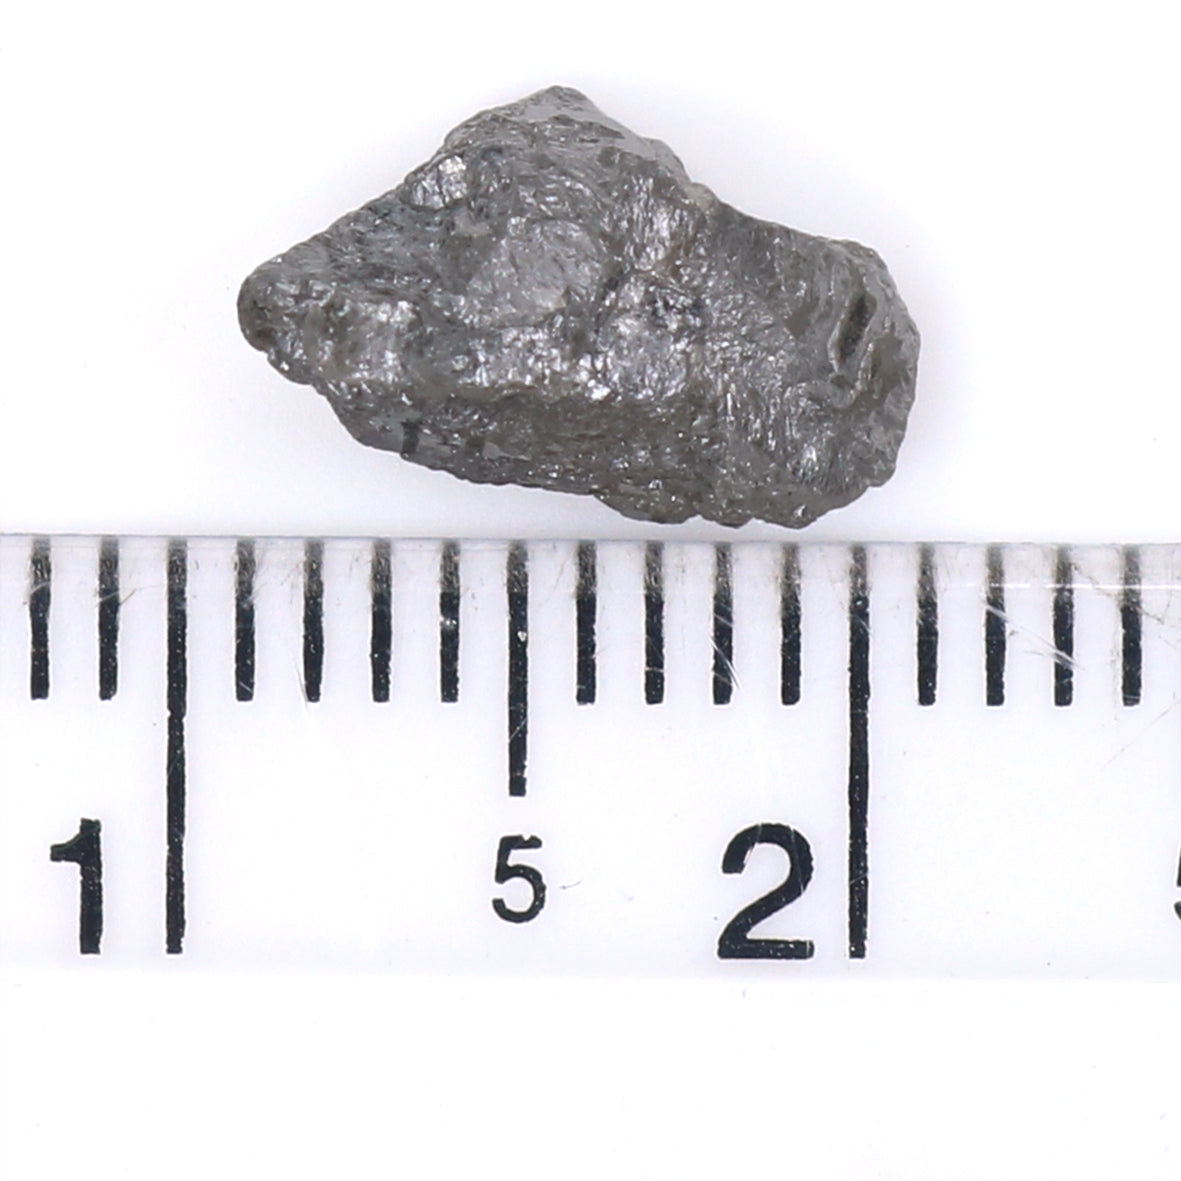 Natural Loose Rough Salt And Pepper Diamond Black Grey Color 2.17 CT 10.25 MM Rough Facet Shape Diamond KDK2479